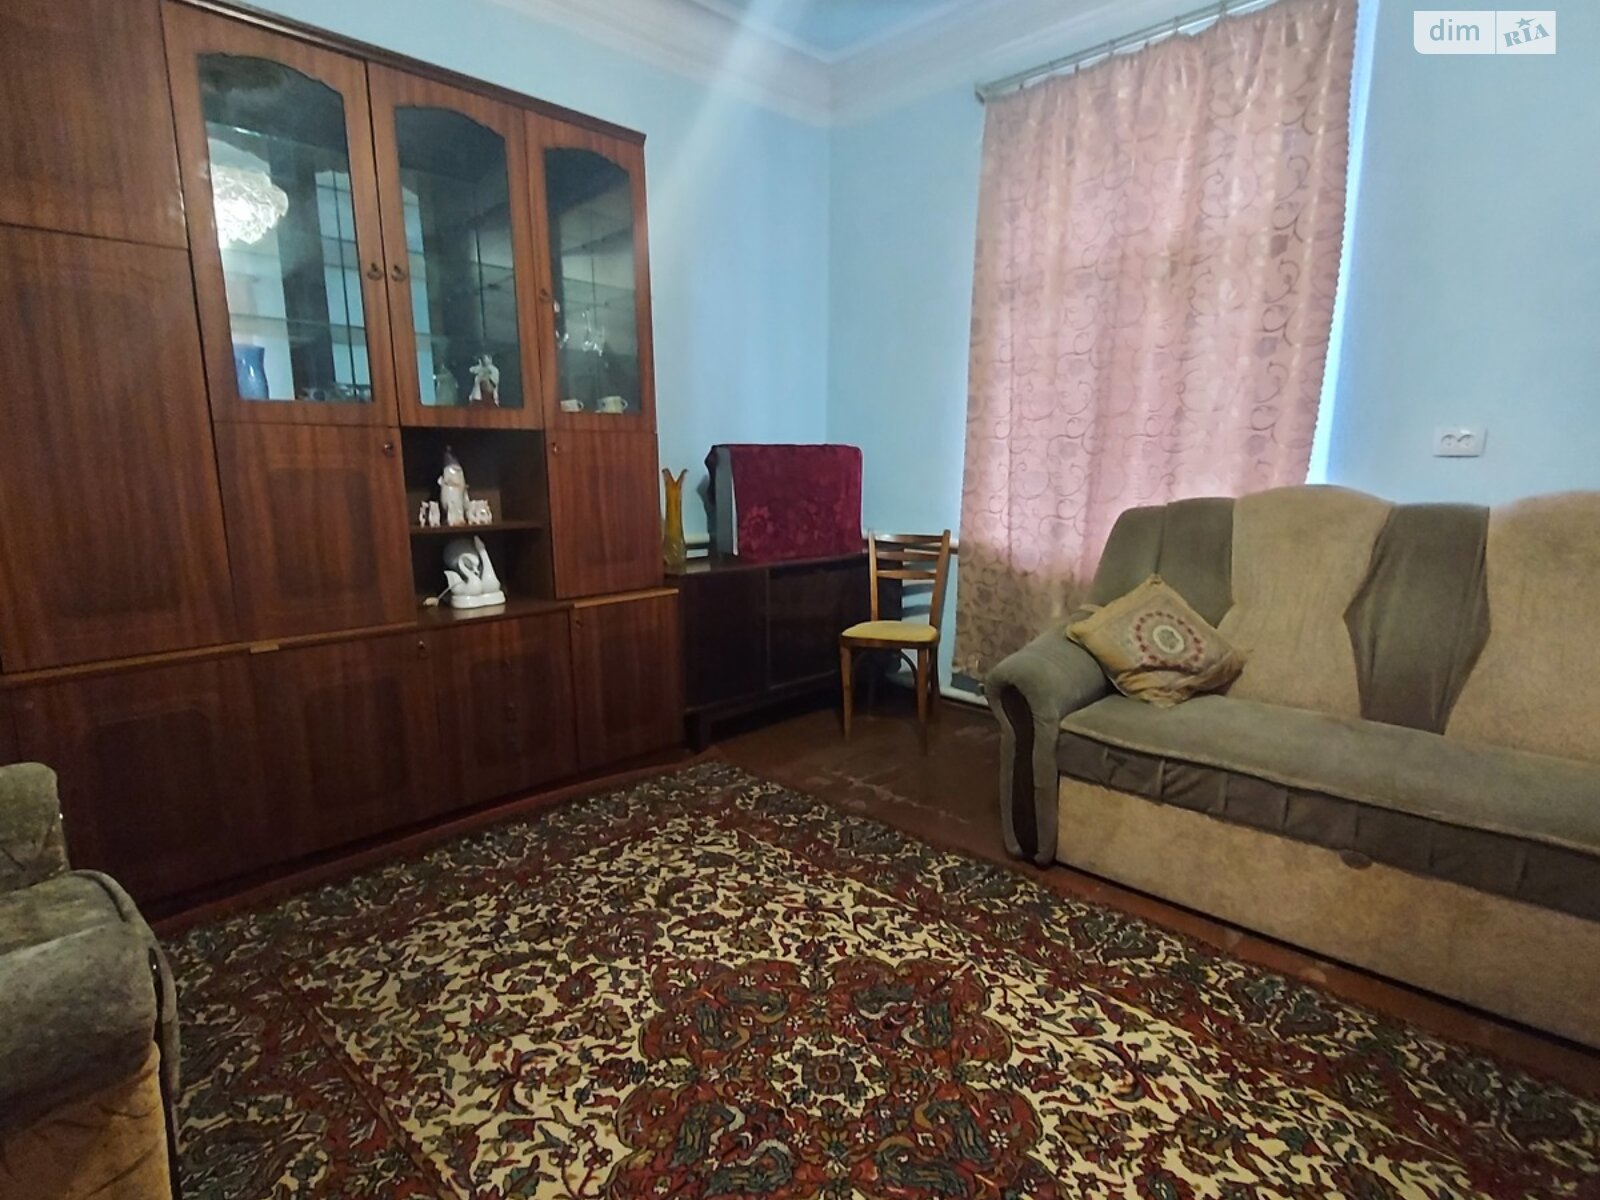 Продажа части дома в Виннице, улица Владимира Сосюры, 2 комнаты фото 1